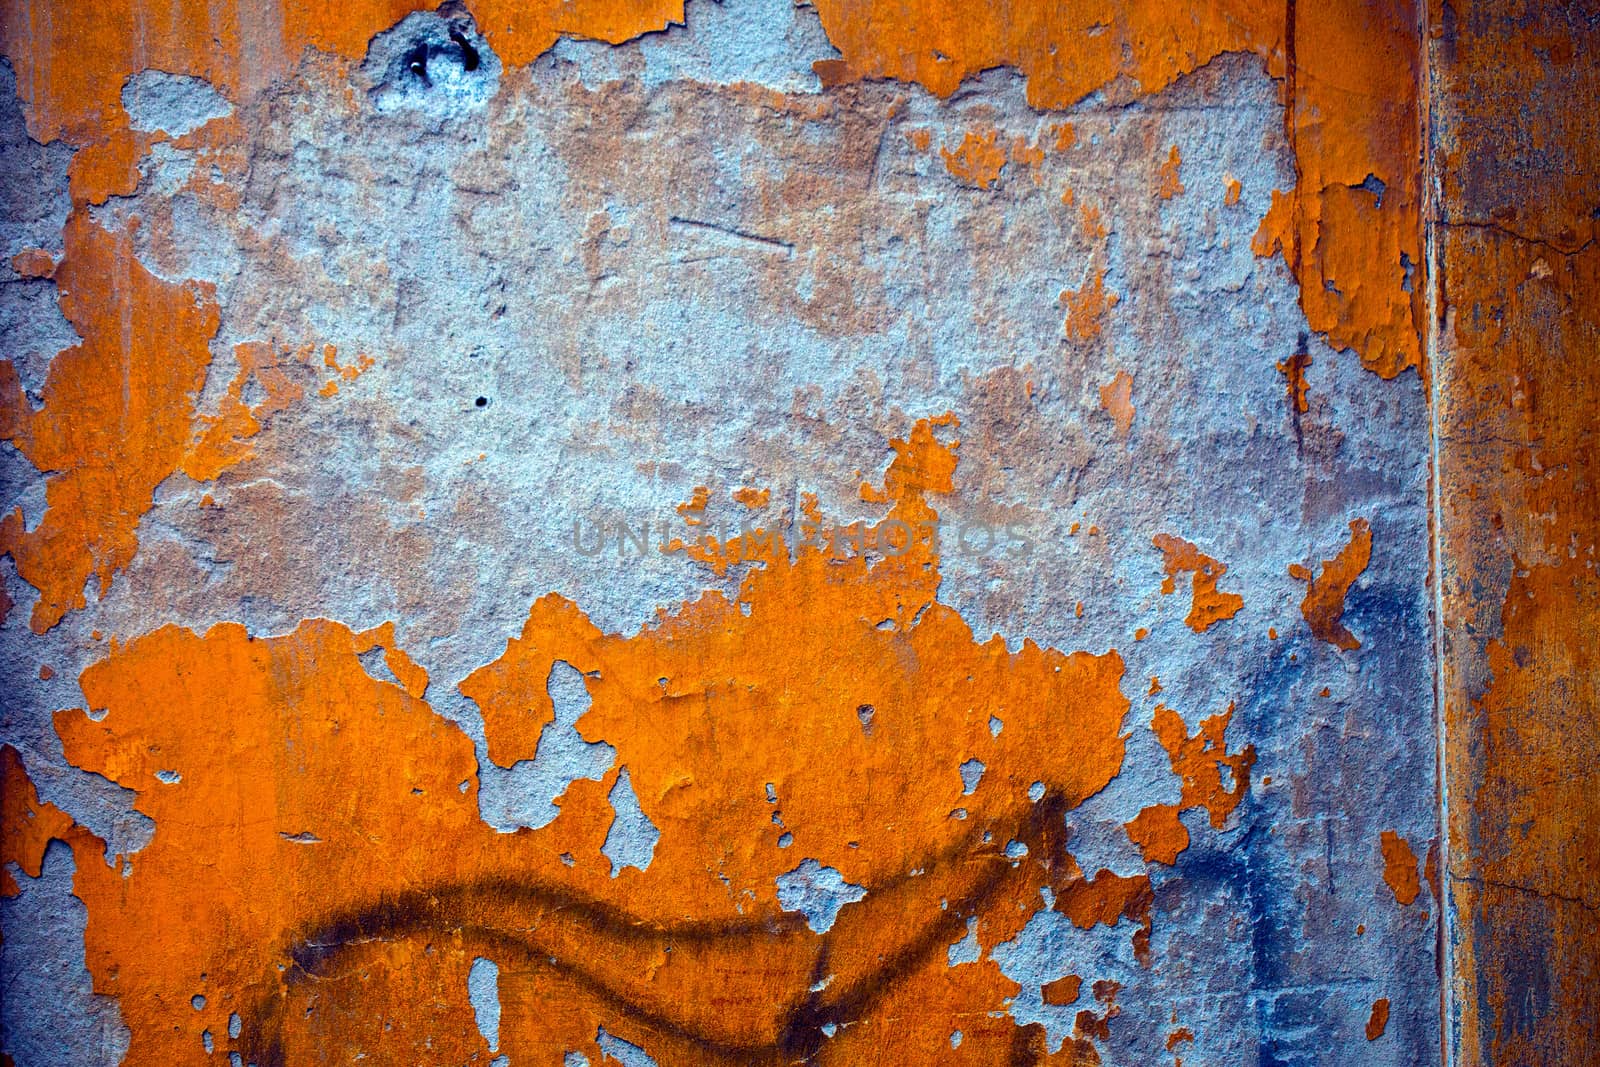 Dirty Grunge Wall by okanakdeniz